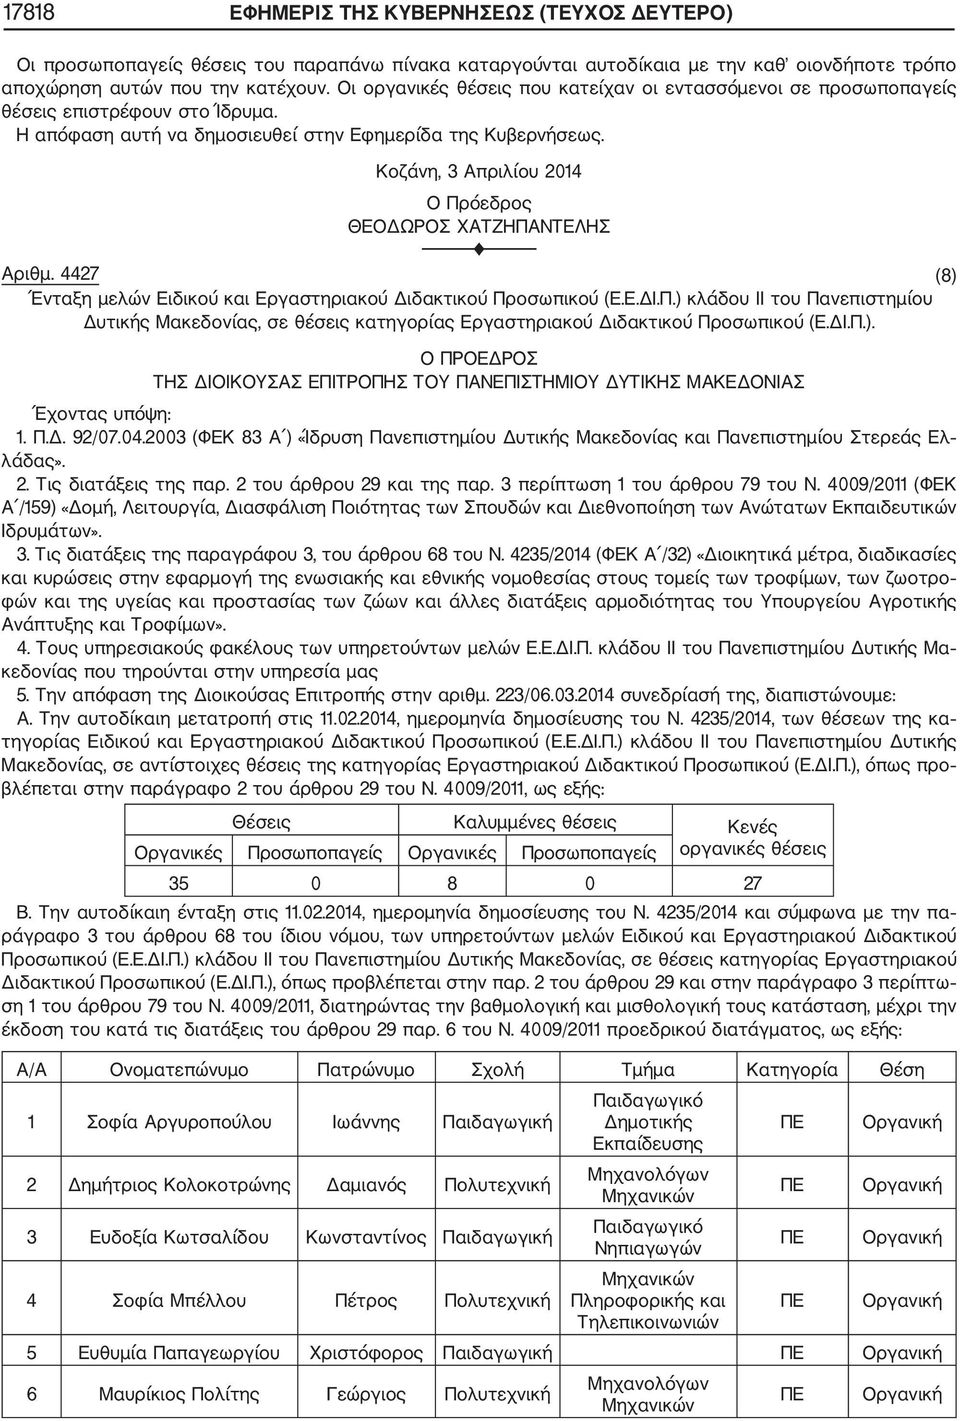 Κοζάνη, 3 Απριλίου 2014 Ο Πρόεδρος ΘΕΟΔΩΡΟΣ ΧΑΤΖΗΠΑΝΤΕΛΗΣ Aριθμ. 4427 (8) Ένταξη μελών Ειδικού και Εργαστηριακού Διδακτικού Προσωπικού (Ε.Ε.ΔΙ.Π.) κλάδου II του Πανεπιστημίου Δυτικής Μακεδονίας, σε θέσεις κατηγορίας Εργαστηριακού Διδακτικού Προσωπικού (Ε.